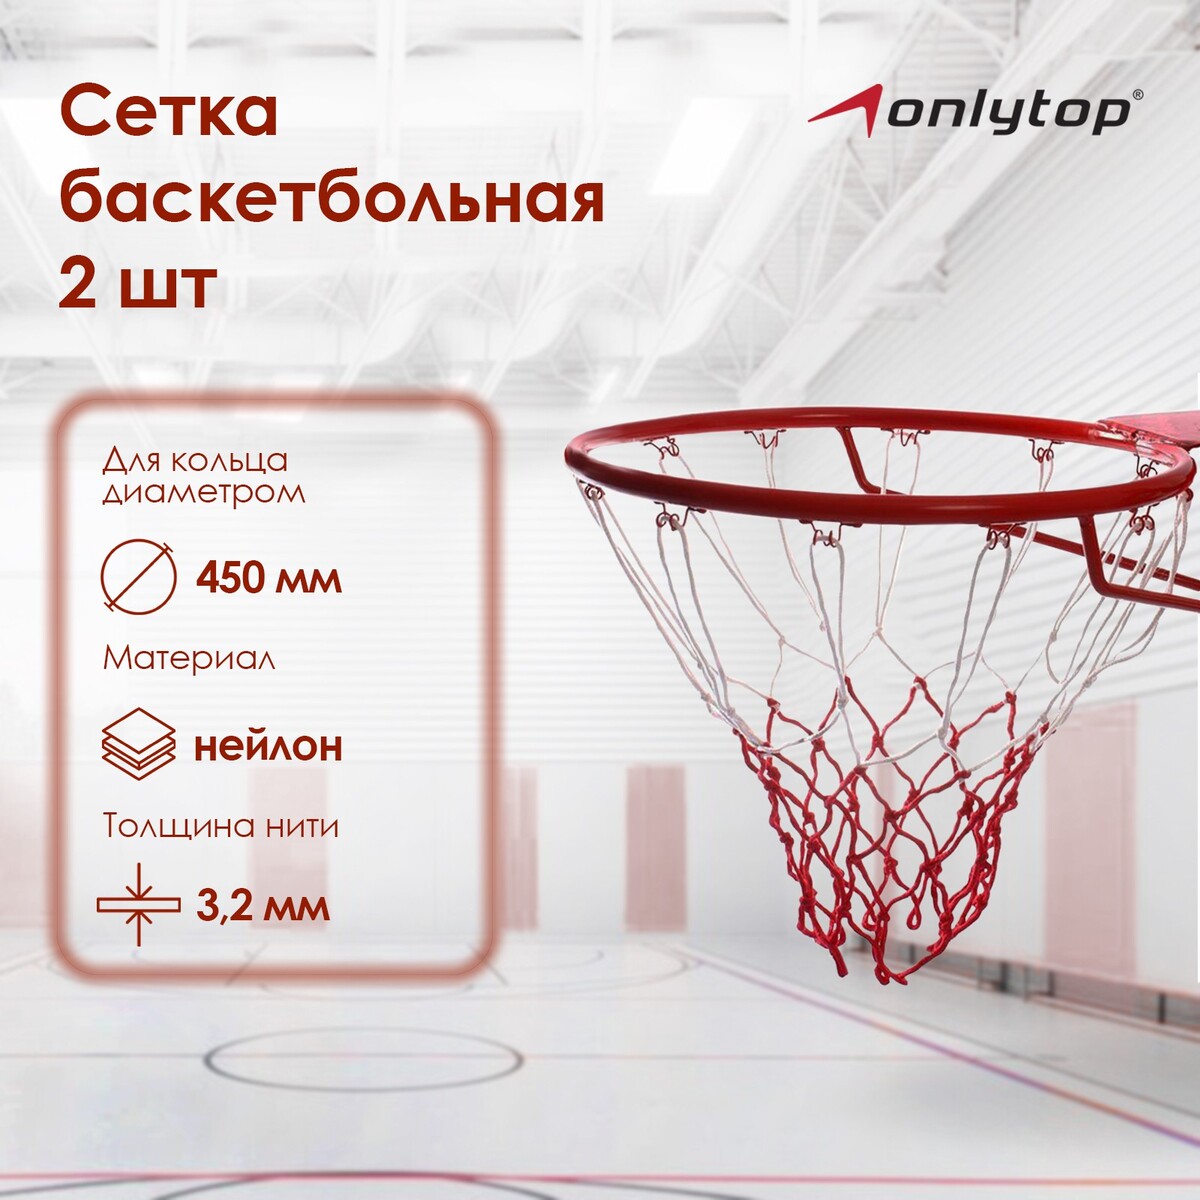 Сетка баскетбольная onlytop, 50 см, нить 3,2 мм, 2 шт. сетка баскетбольная torres нить 4мм ss11050 бело сине красная